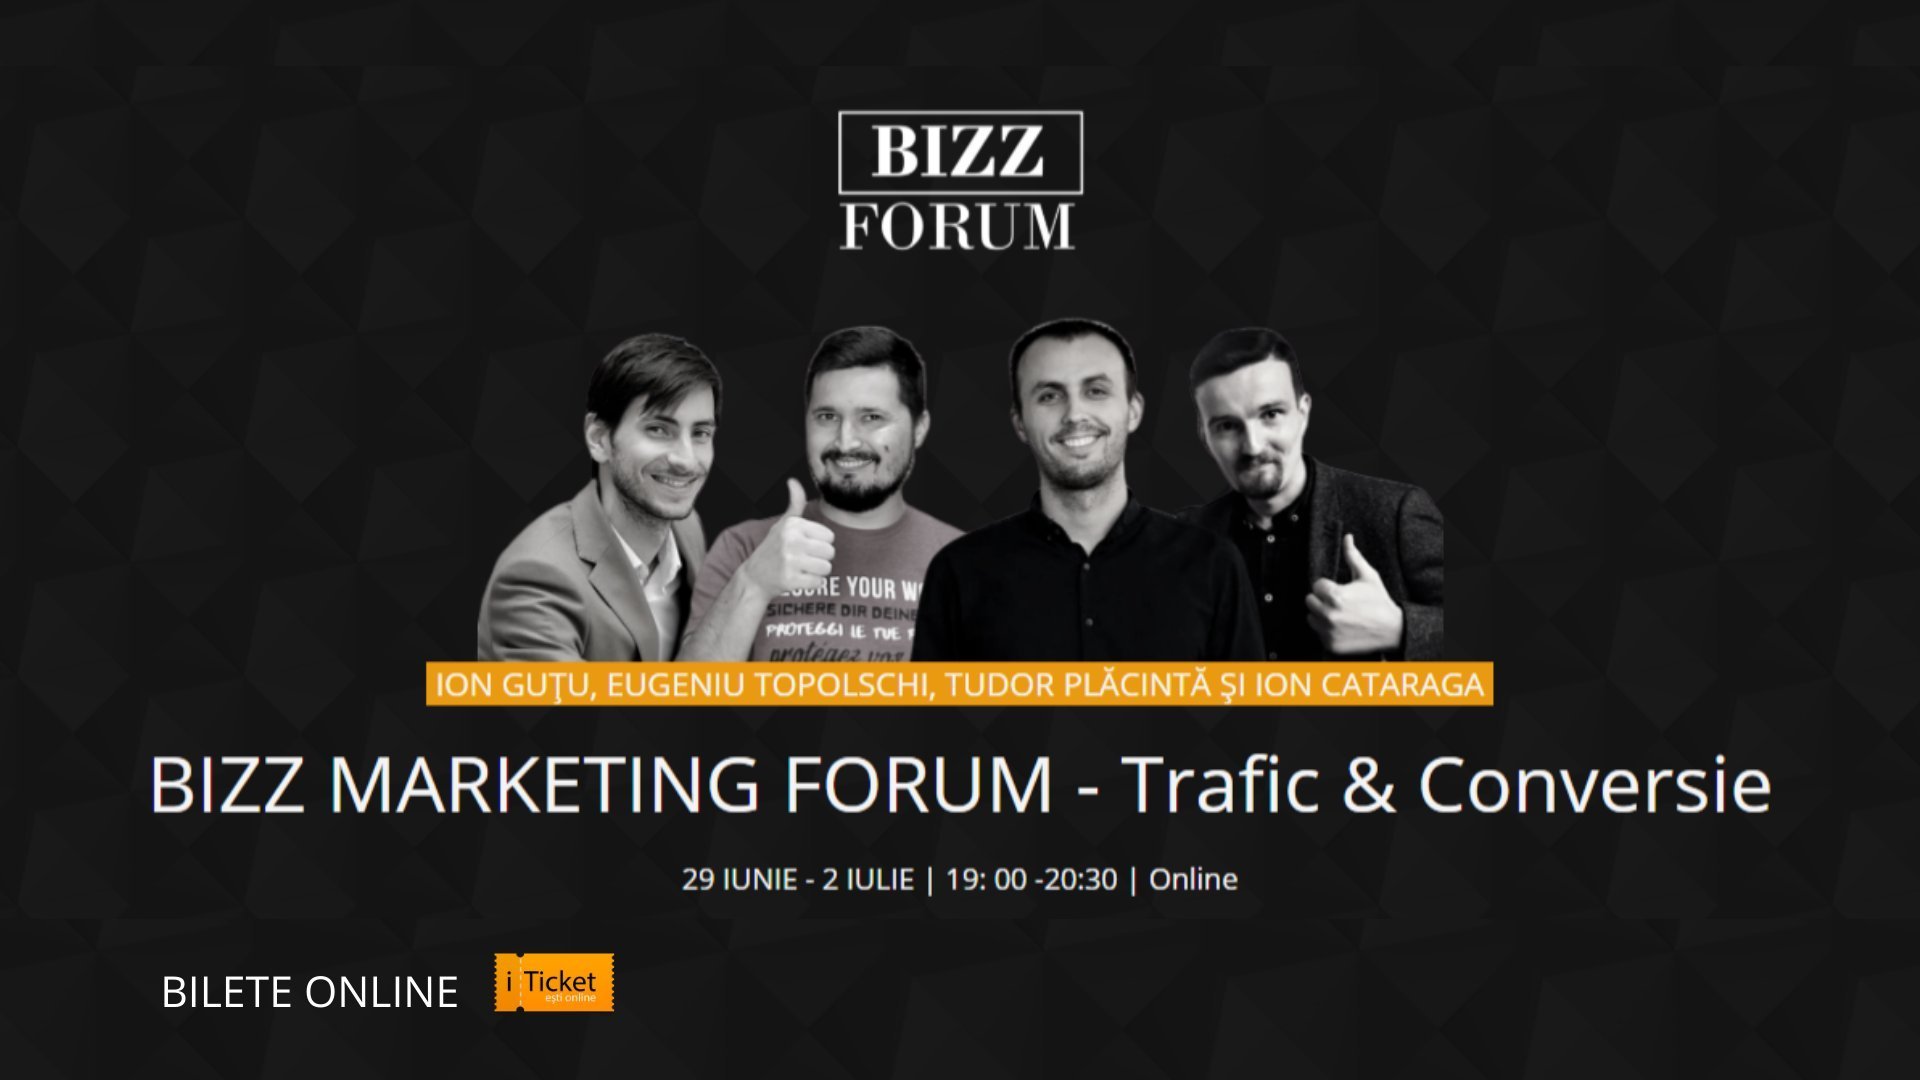 Bizz Marketing Forum Online - Trafic & Conversie